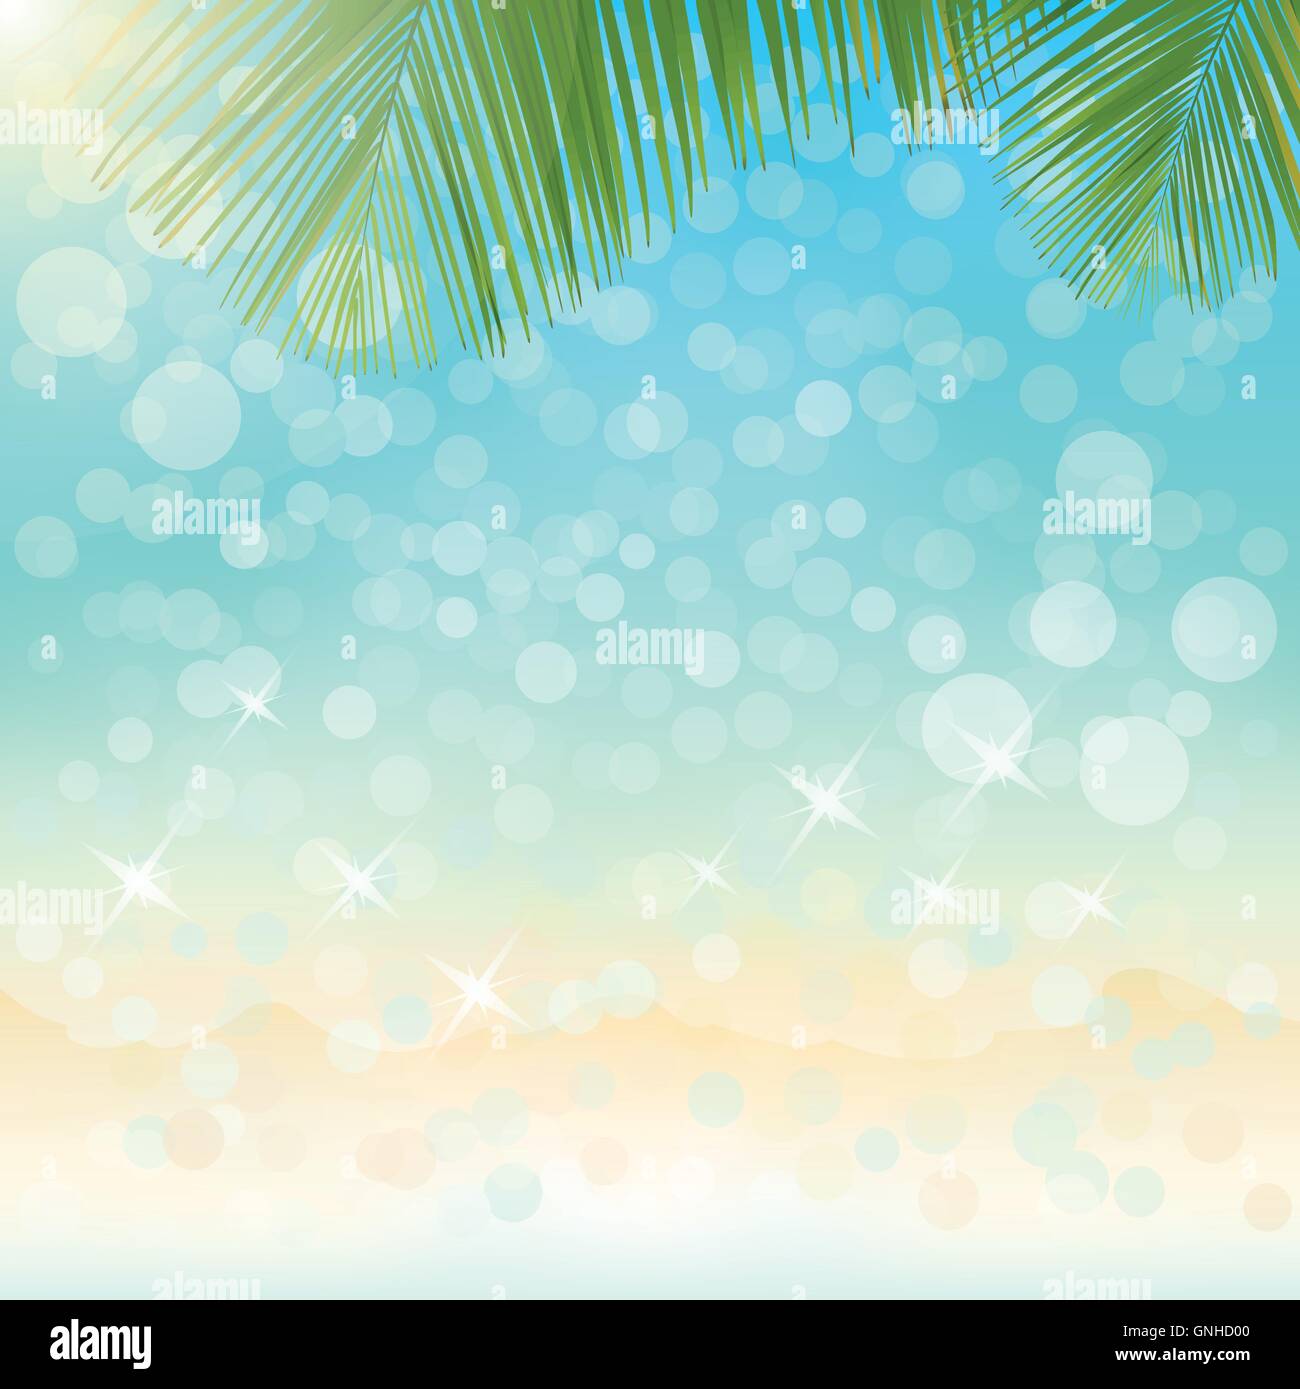 Funkelnde Meer Wasser Sommer der Hintergrund jedoch unscharf mit Bokeh-Vektor-illustration Stock Vektor